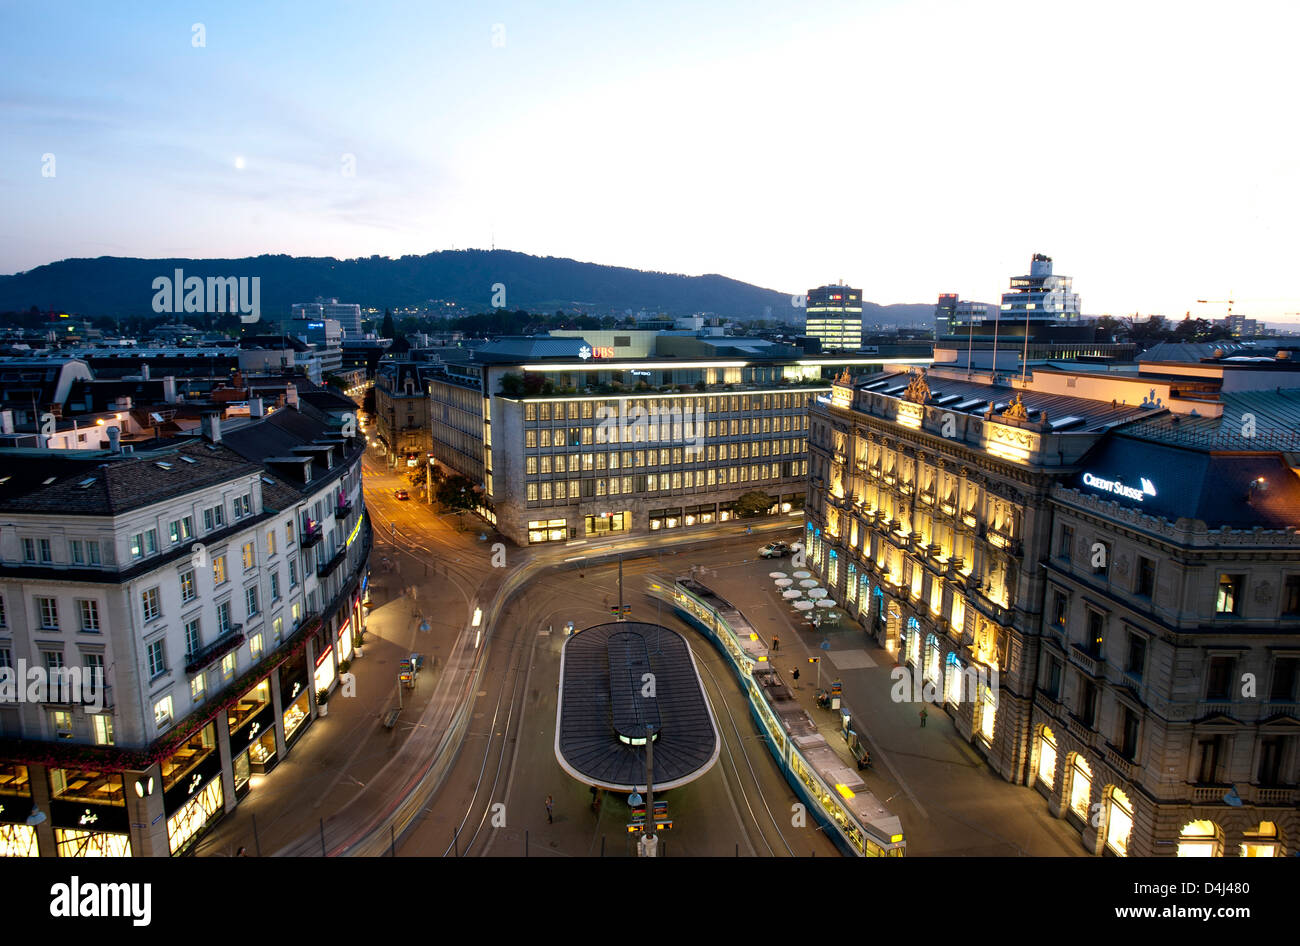 Zurigo, Svizzera, parata a terra con la banca UBS e Credit Suisse Foto Stock